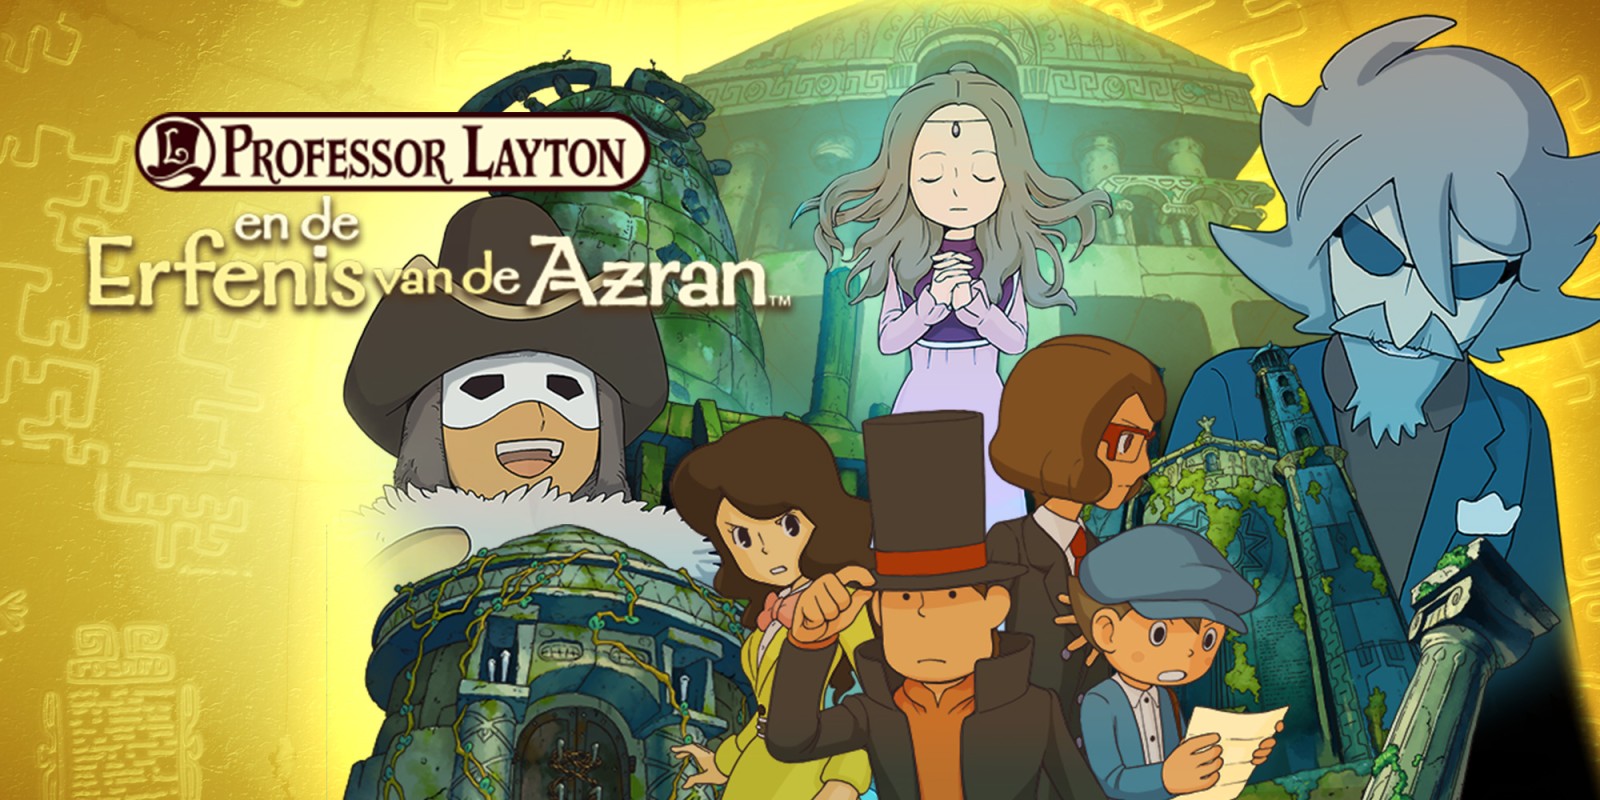 Professor Layton en de Erfenis van de Azran